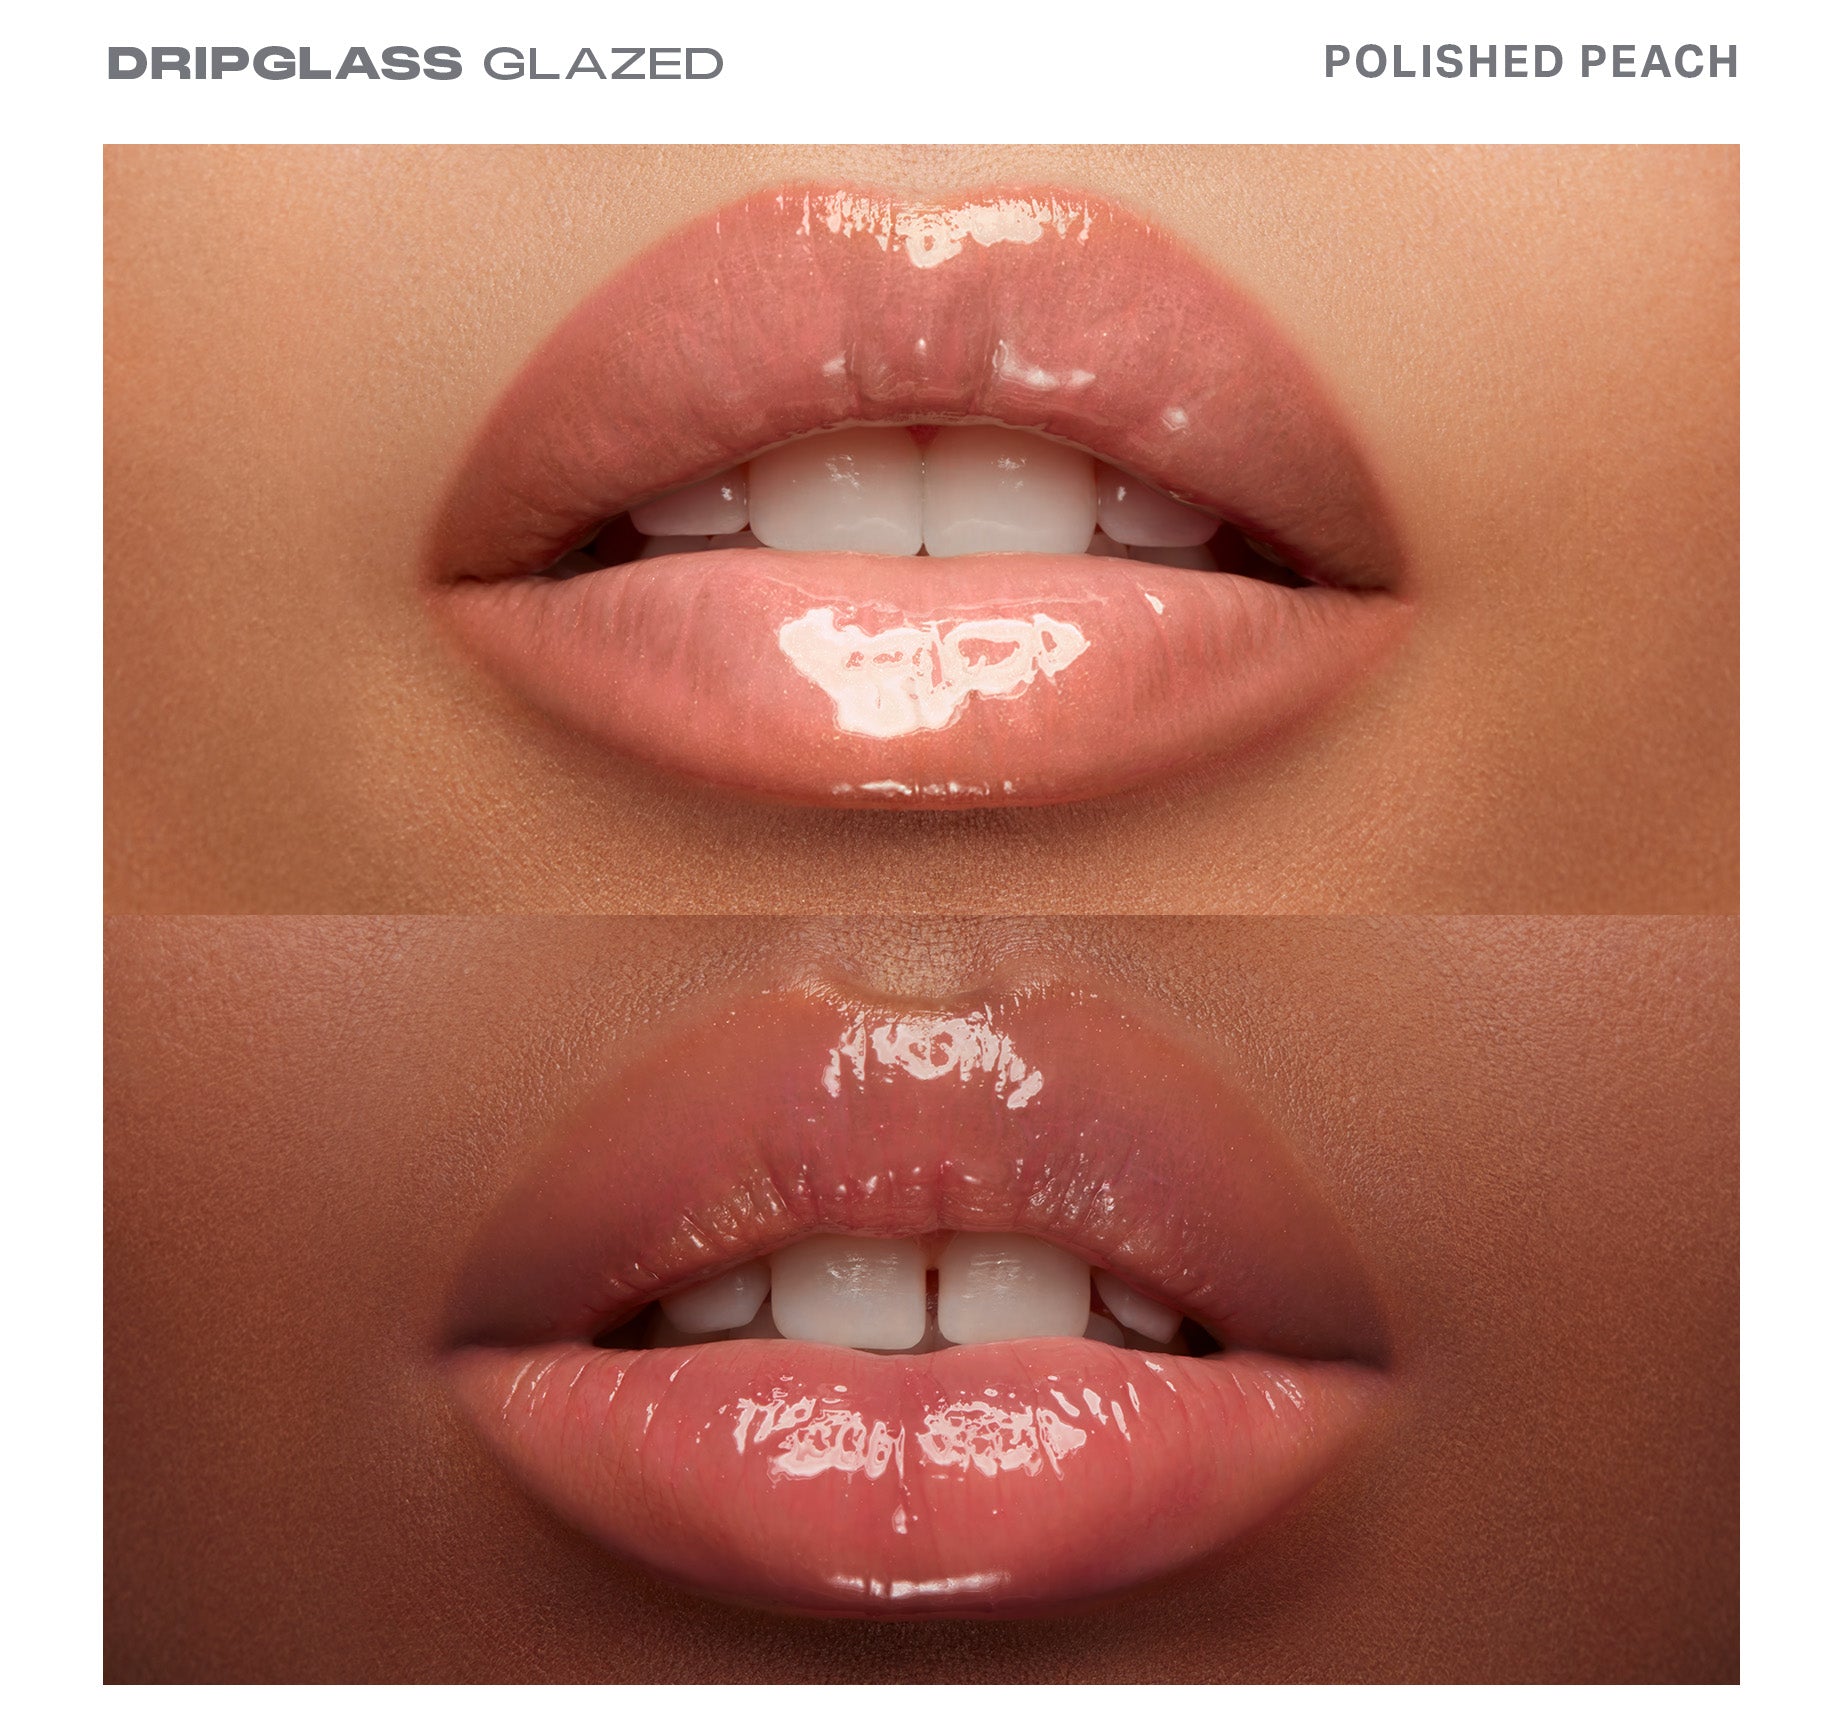 Dripglass Glazed High Shine Lip Gloss - Polished Peach - Image 3